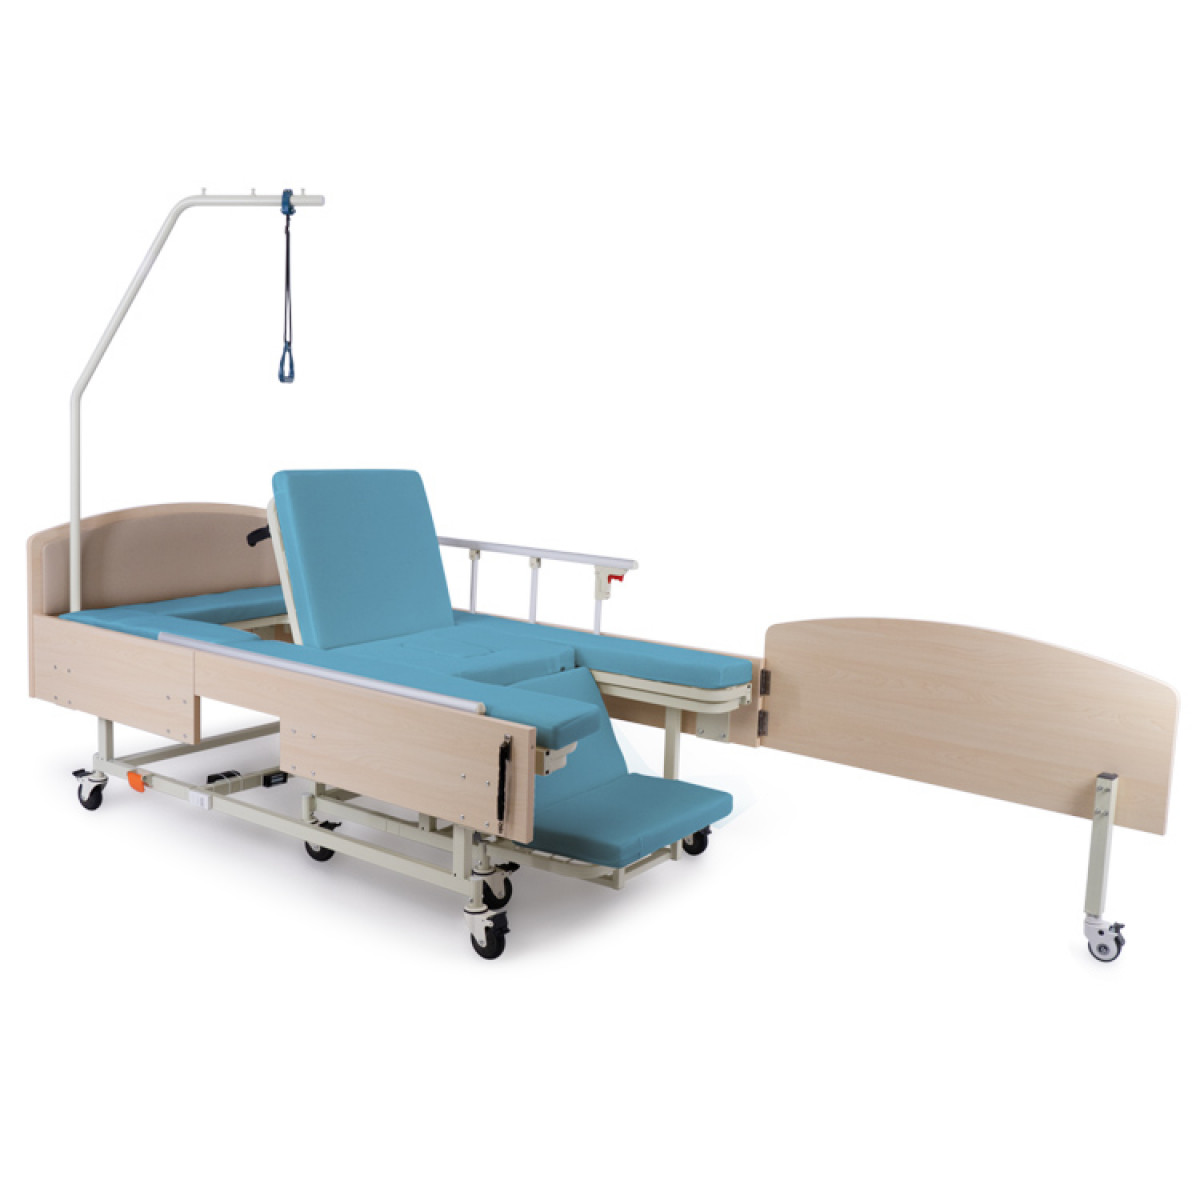 Купить кровать электрическую. Кровать функциональная медицинская Bly-1. Кровать met Integra Bly-1. Мет Интегра медицинская кровать с интегрированным креслом. Функциональная кровать электрическая MCARE (4 Motors).